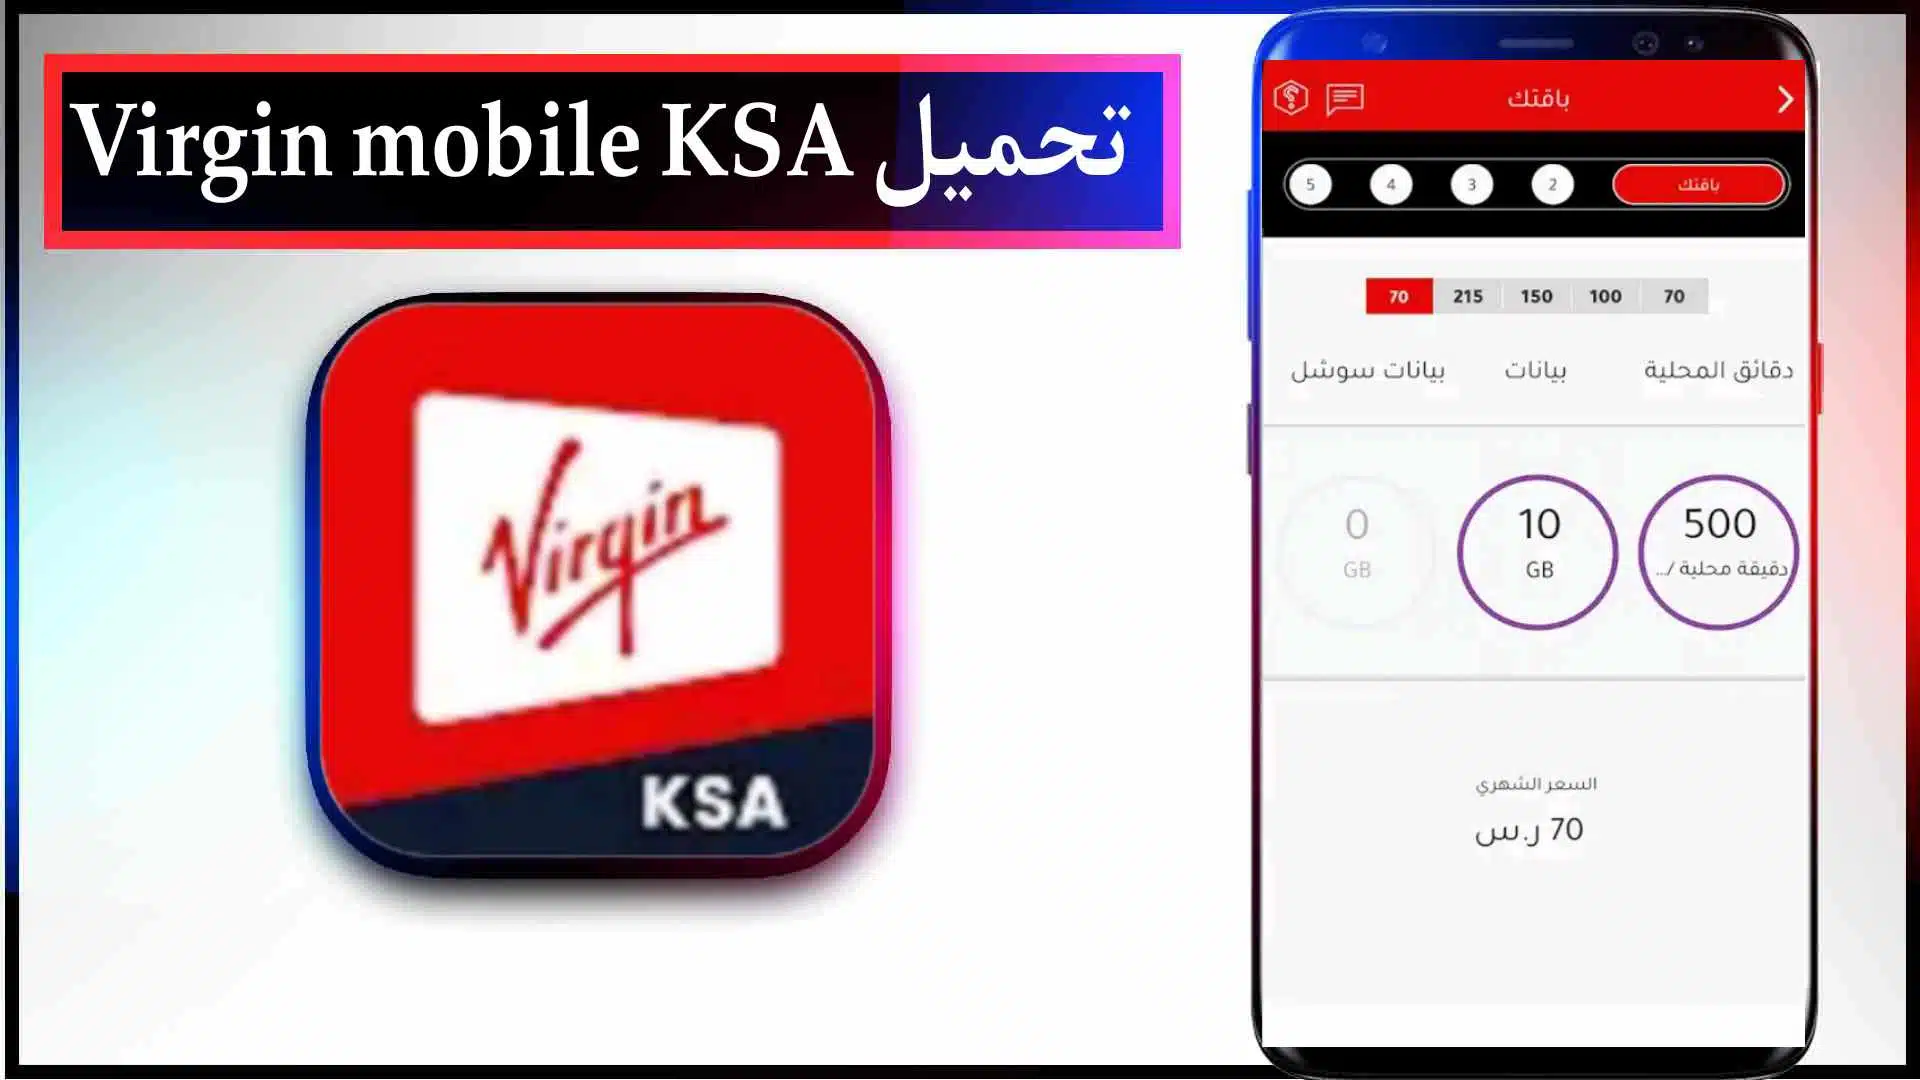 تحميل تطبيق فيرجن السعودية اخر اصدار للاندرويد وللايفون Virgin mobile KSA